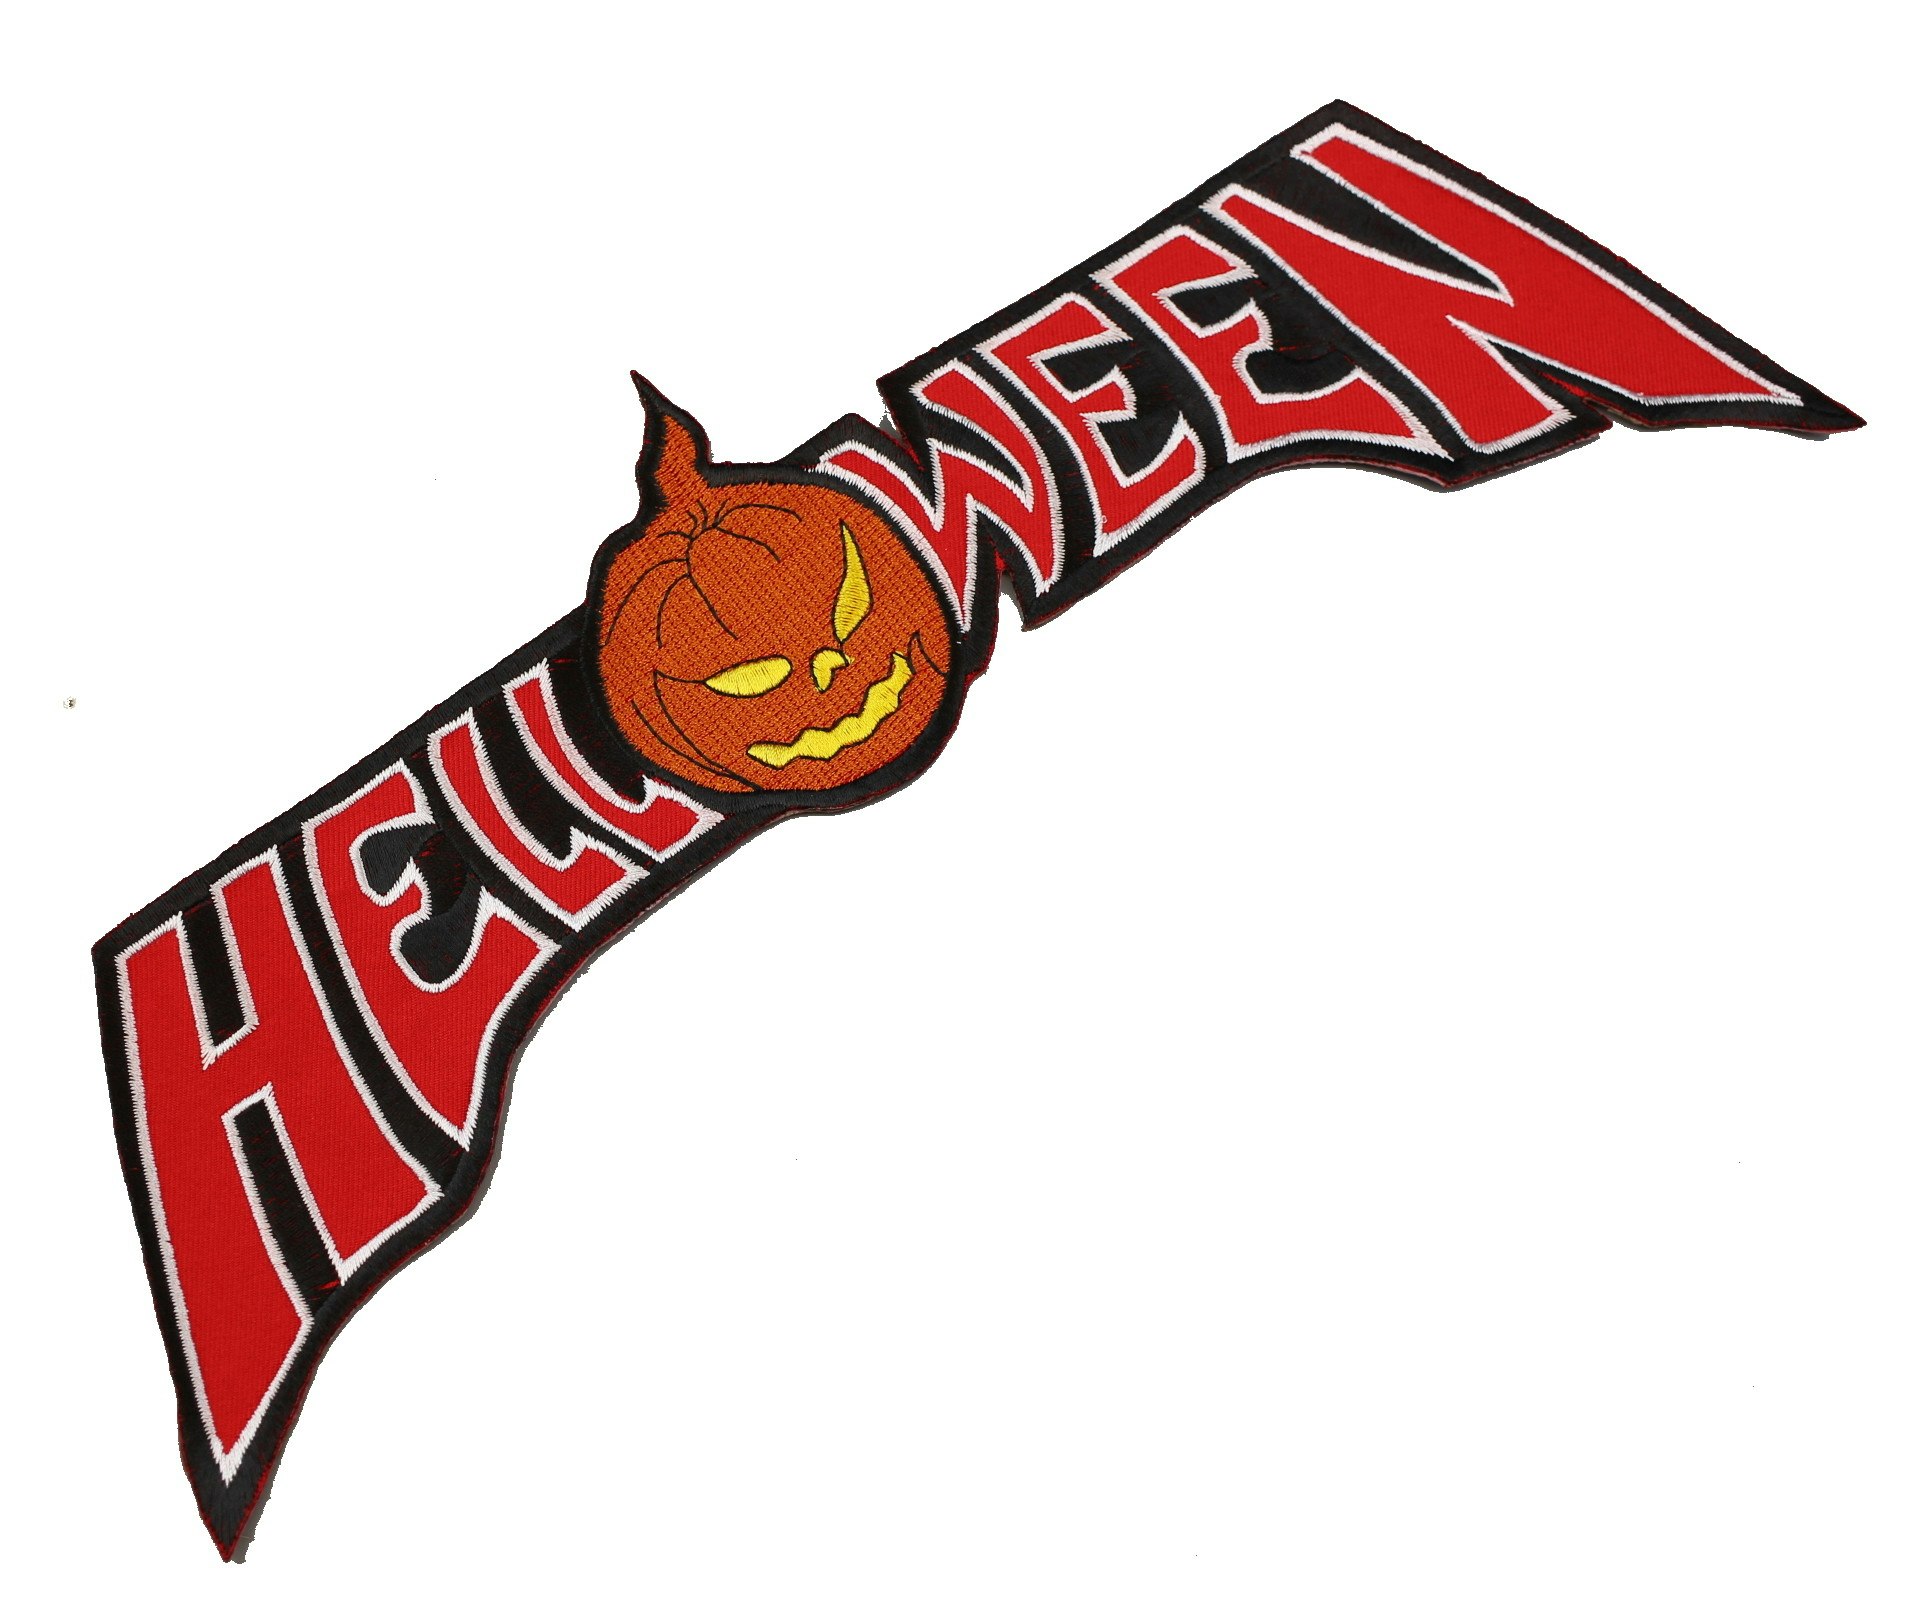 Helloween logo XL patch